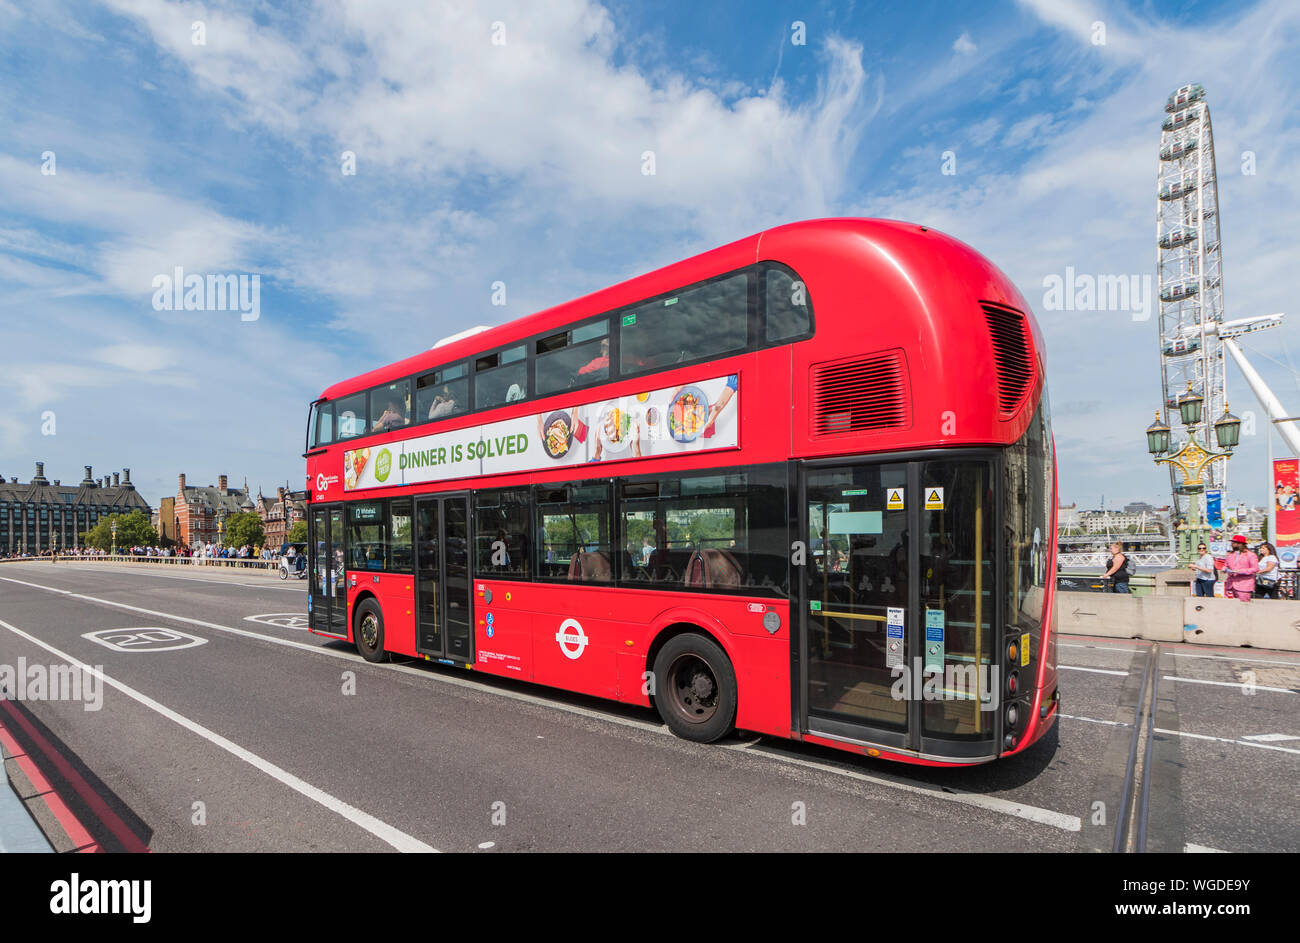 Wrightbus Nouveau Routemaster bus, à l'origine de nouveaux bus pour Londres, un hybride double deck bus Londres rouge dans City of Westminster, London, UK. London bus. Banque D'Images